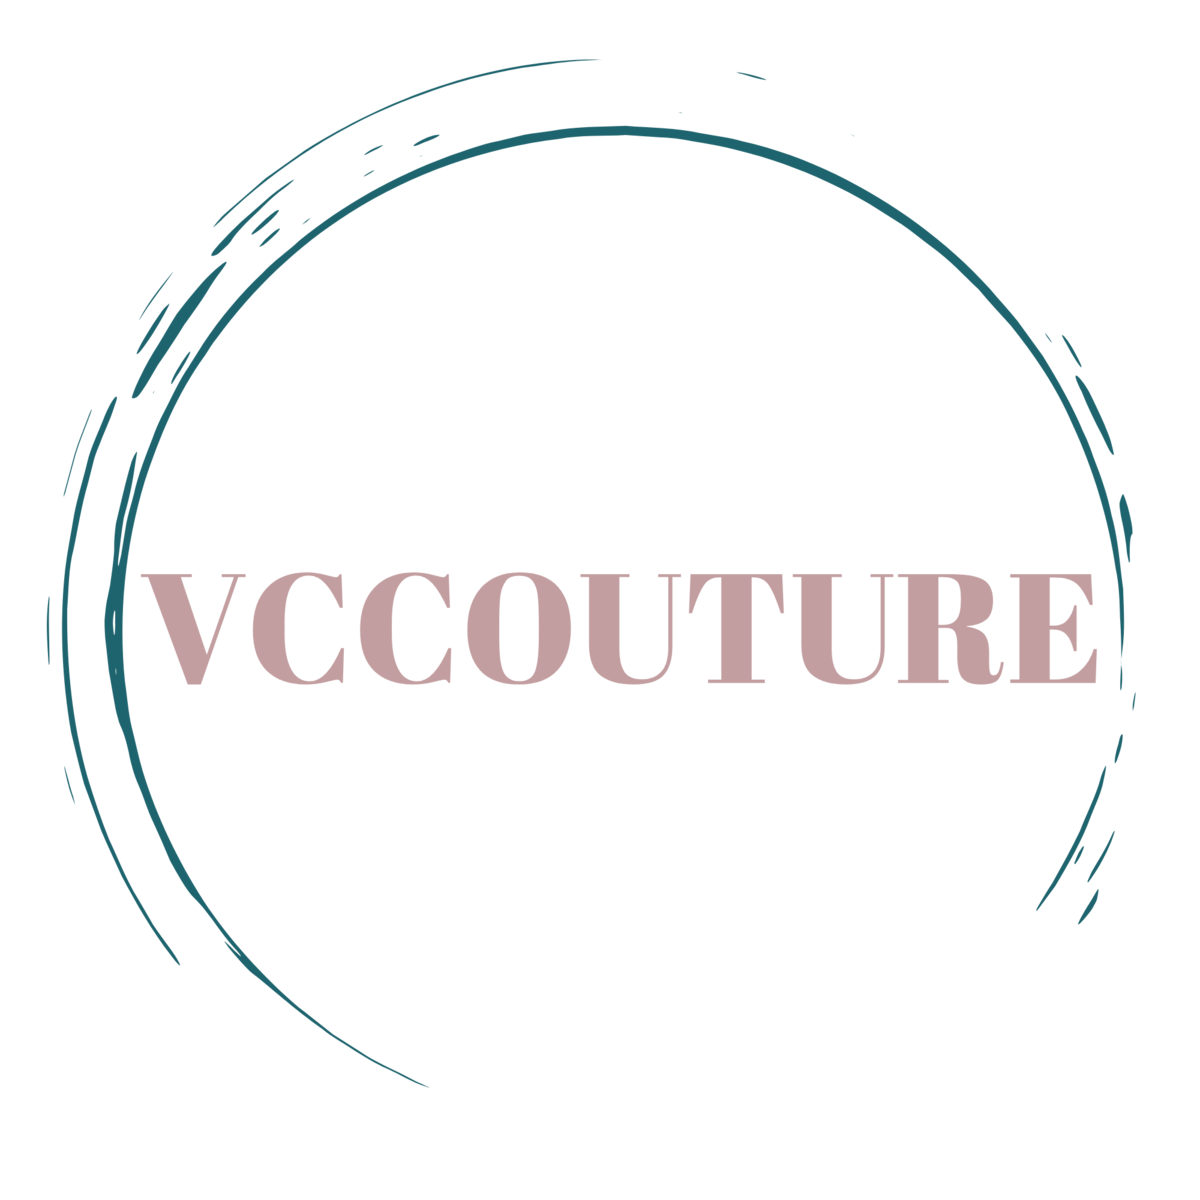 (c) Vc-couture.de